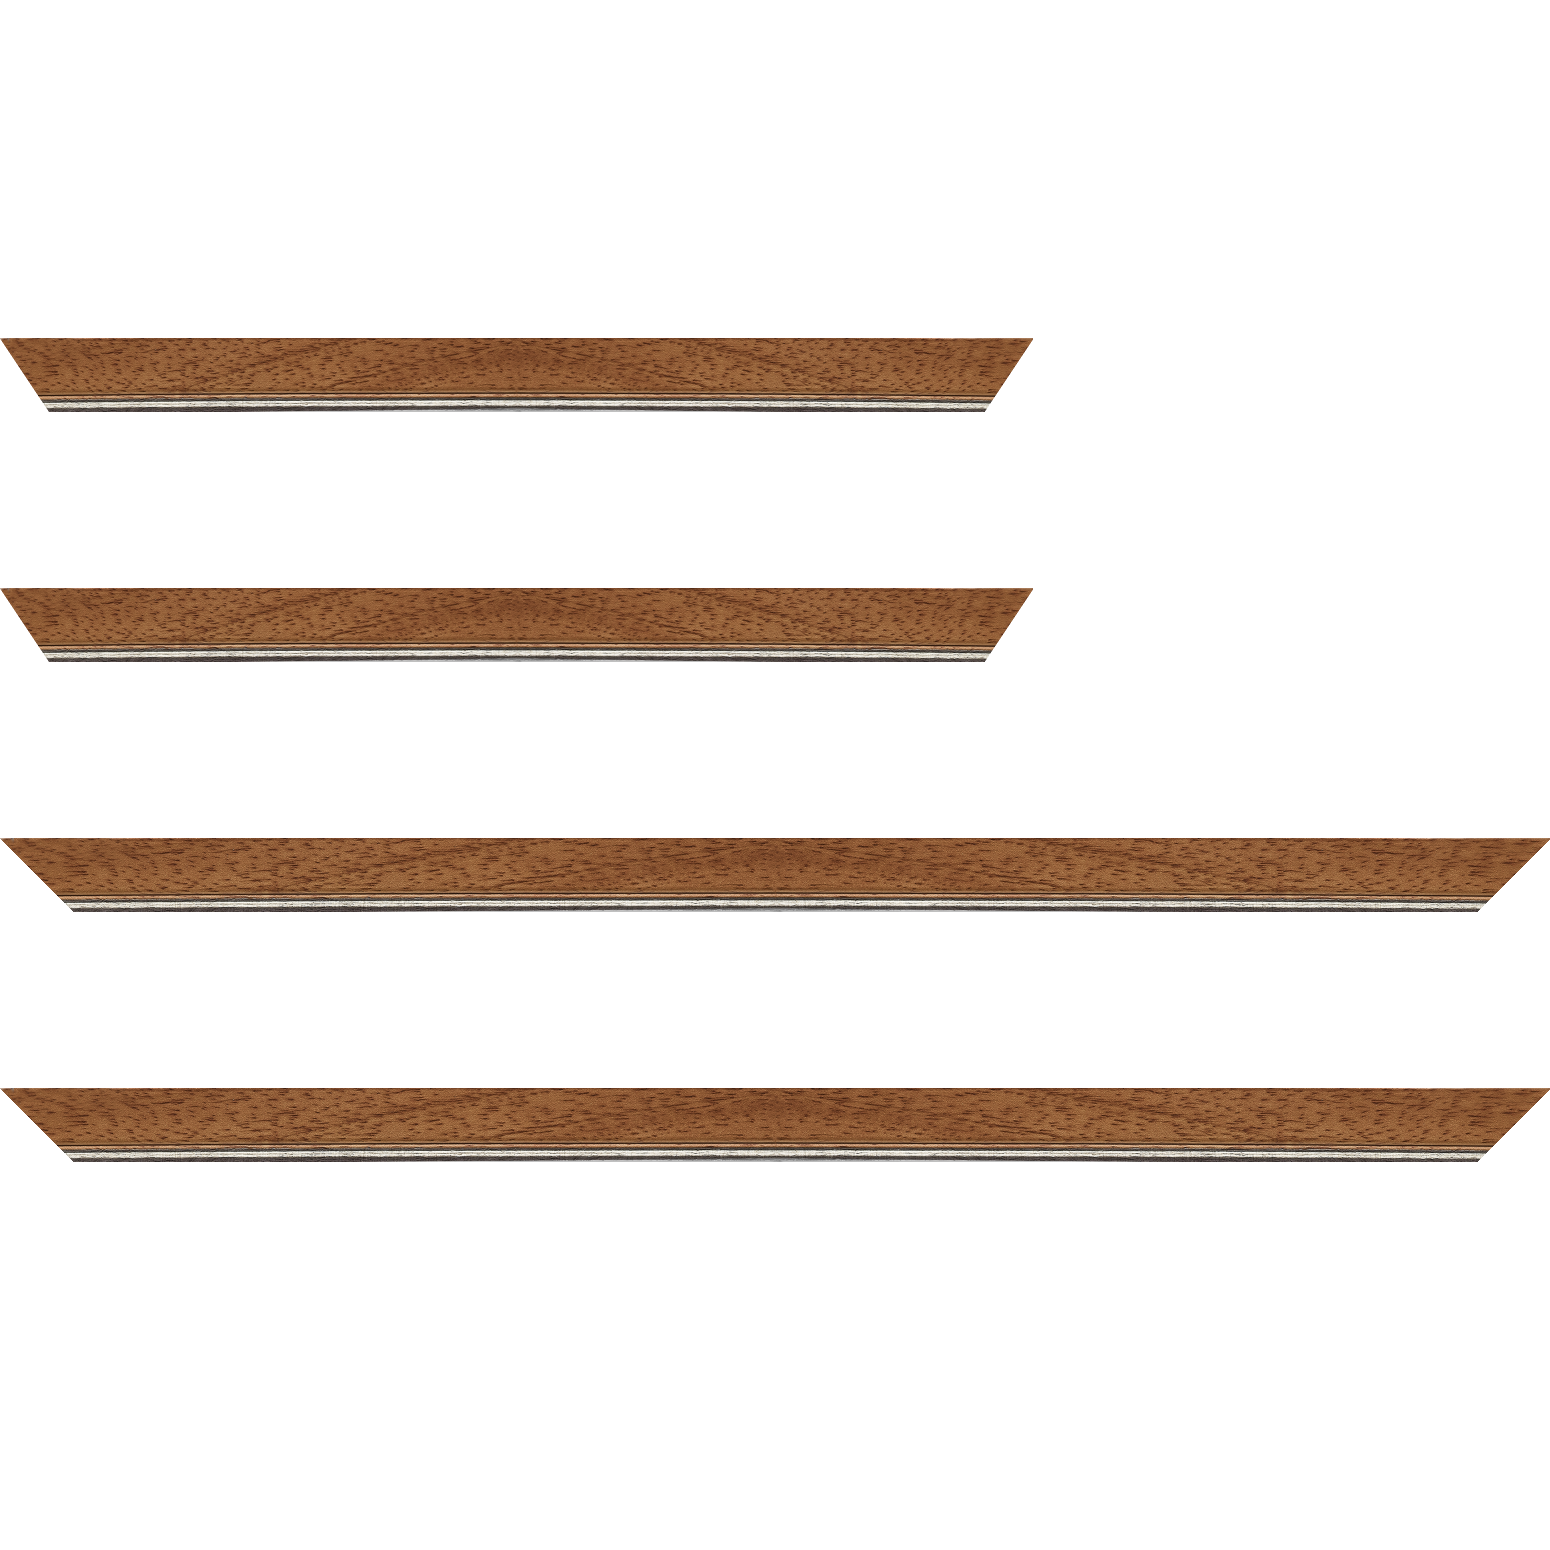 Baguette bois profil plat largeur 2.5cm couleur marron ton bois filet argent - 59.4x84.1